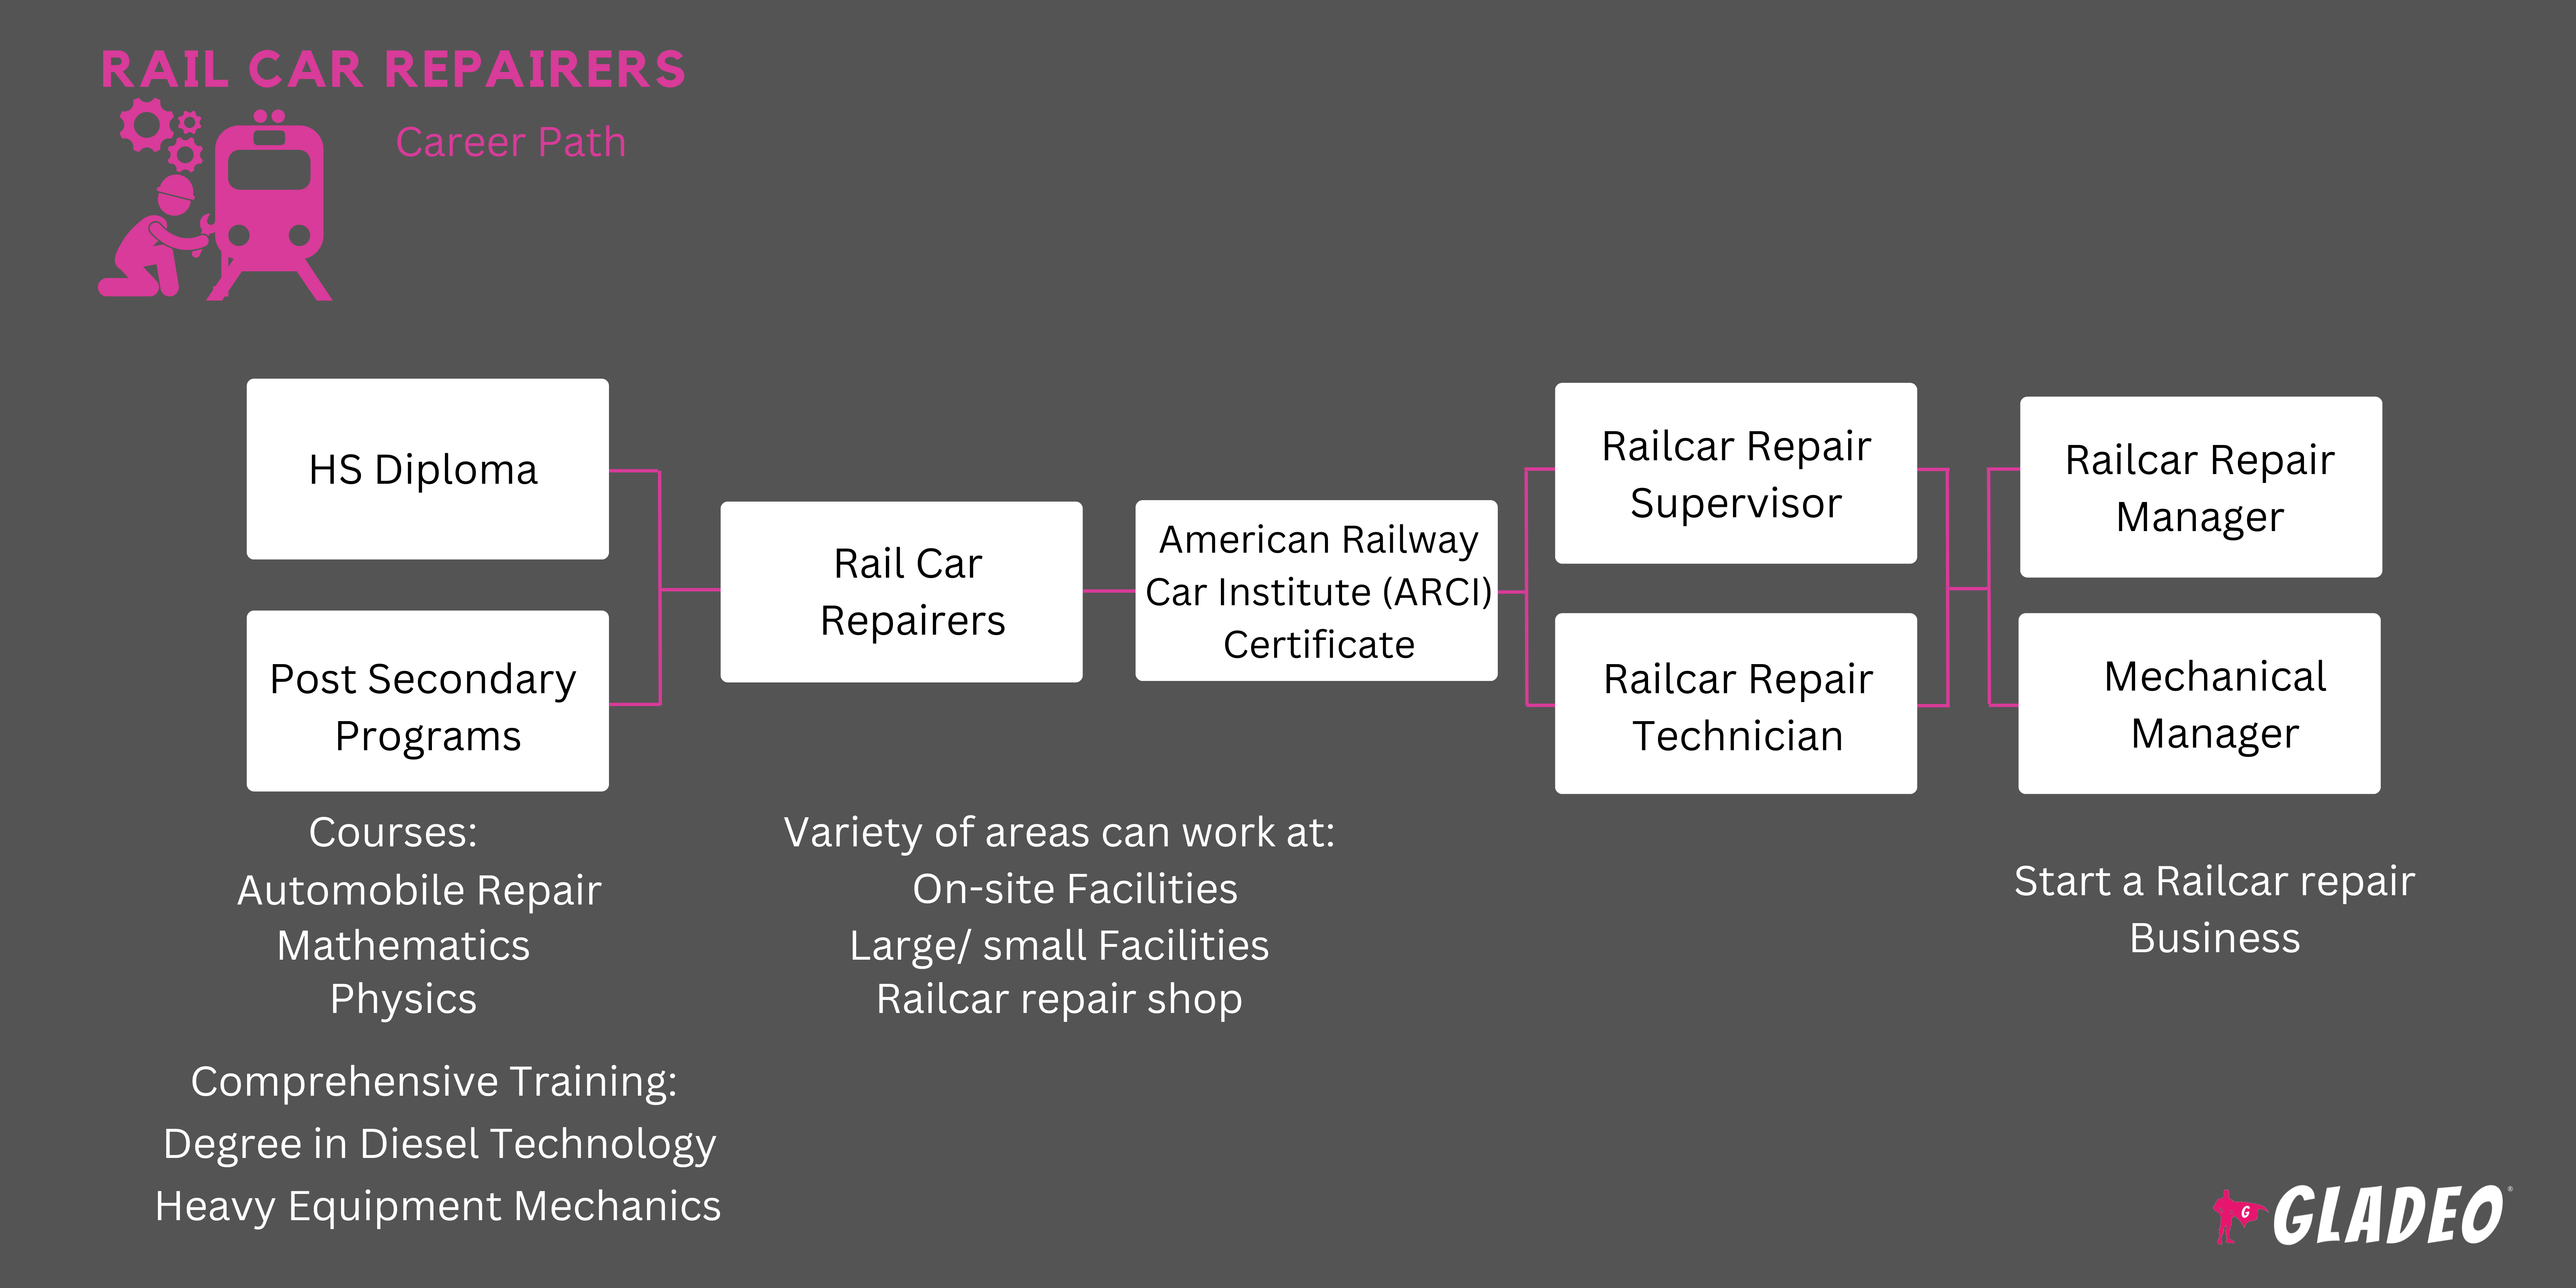 Rail Car Repairers Roadmap